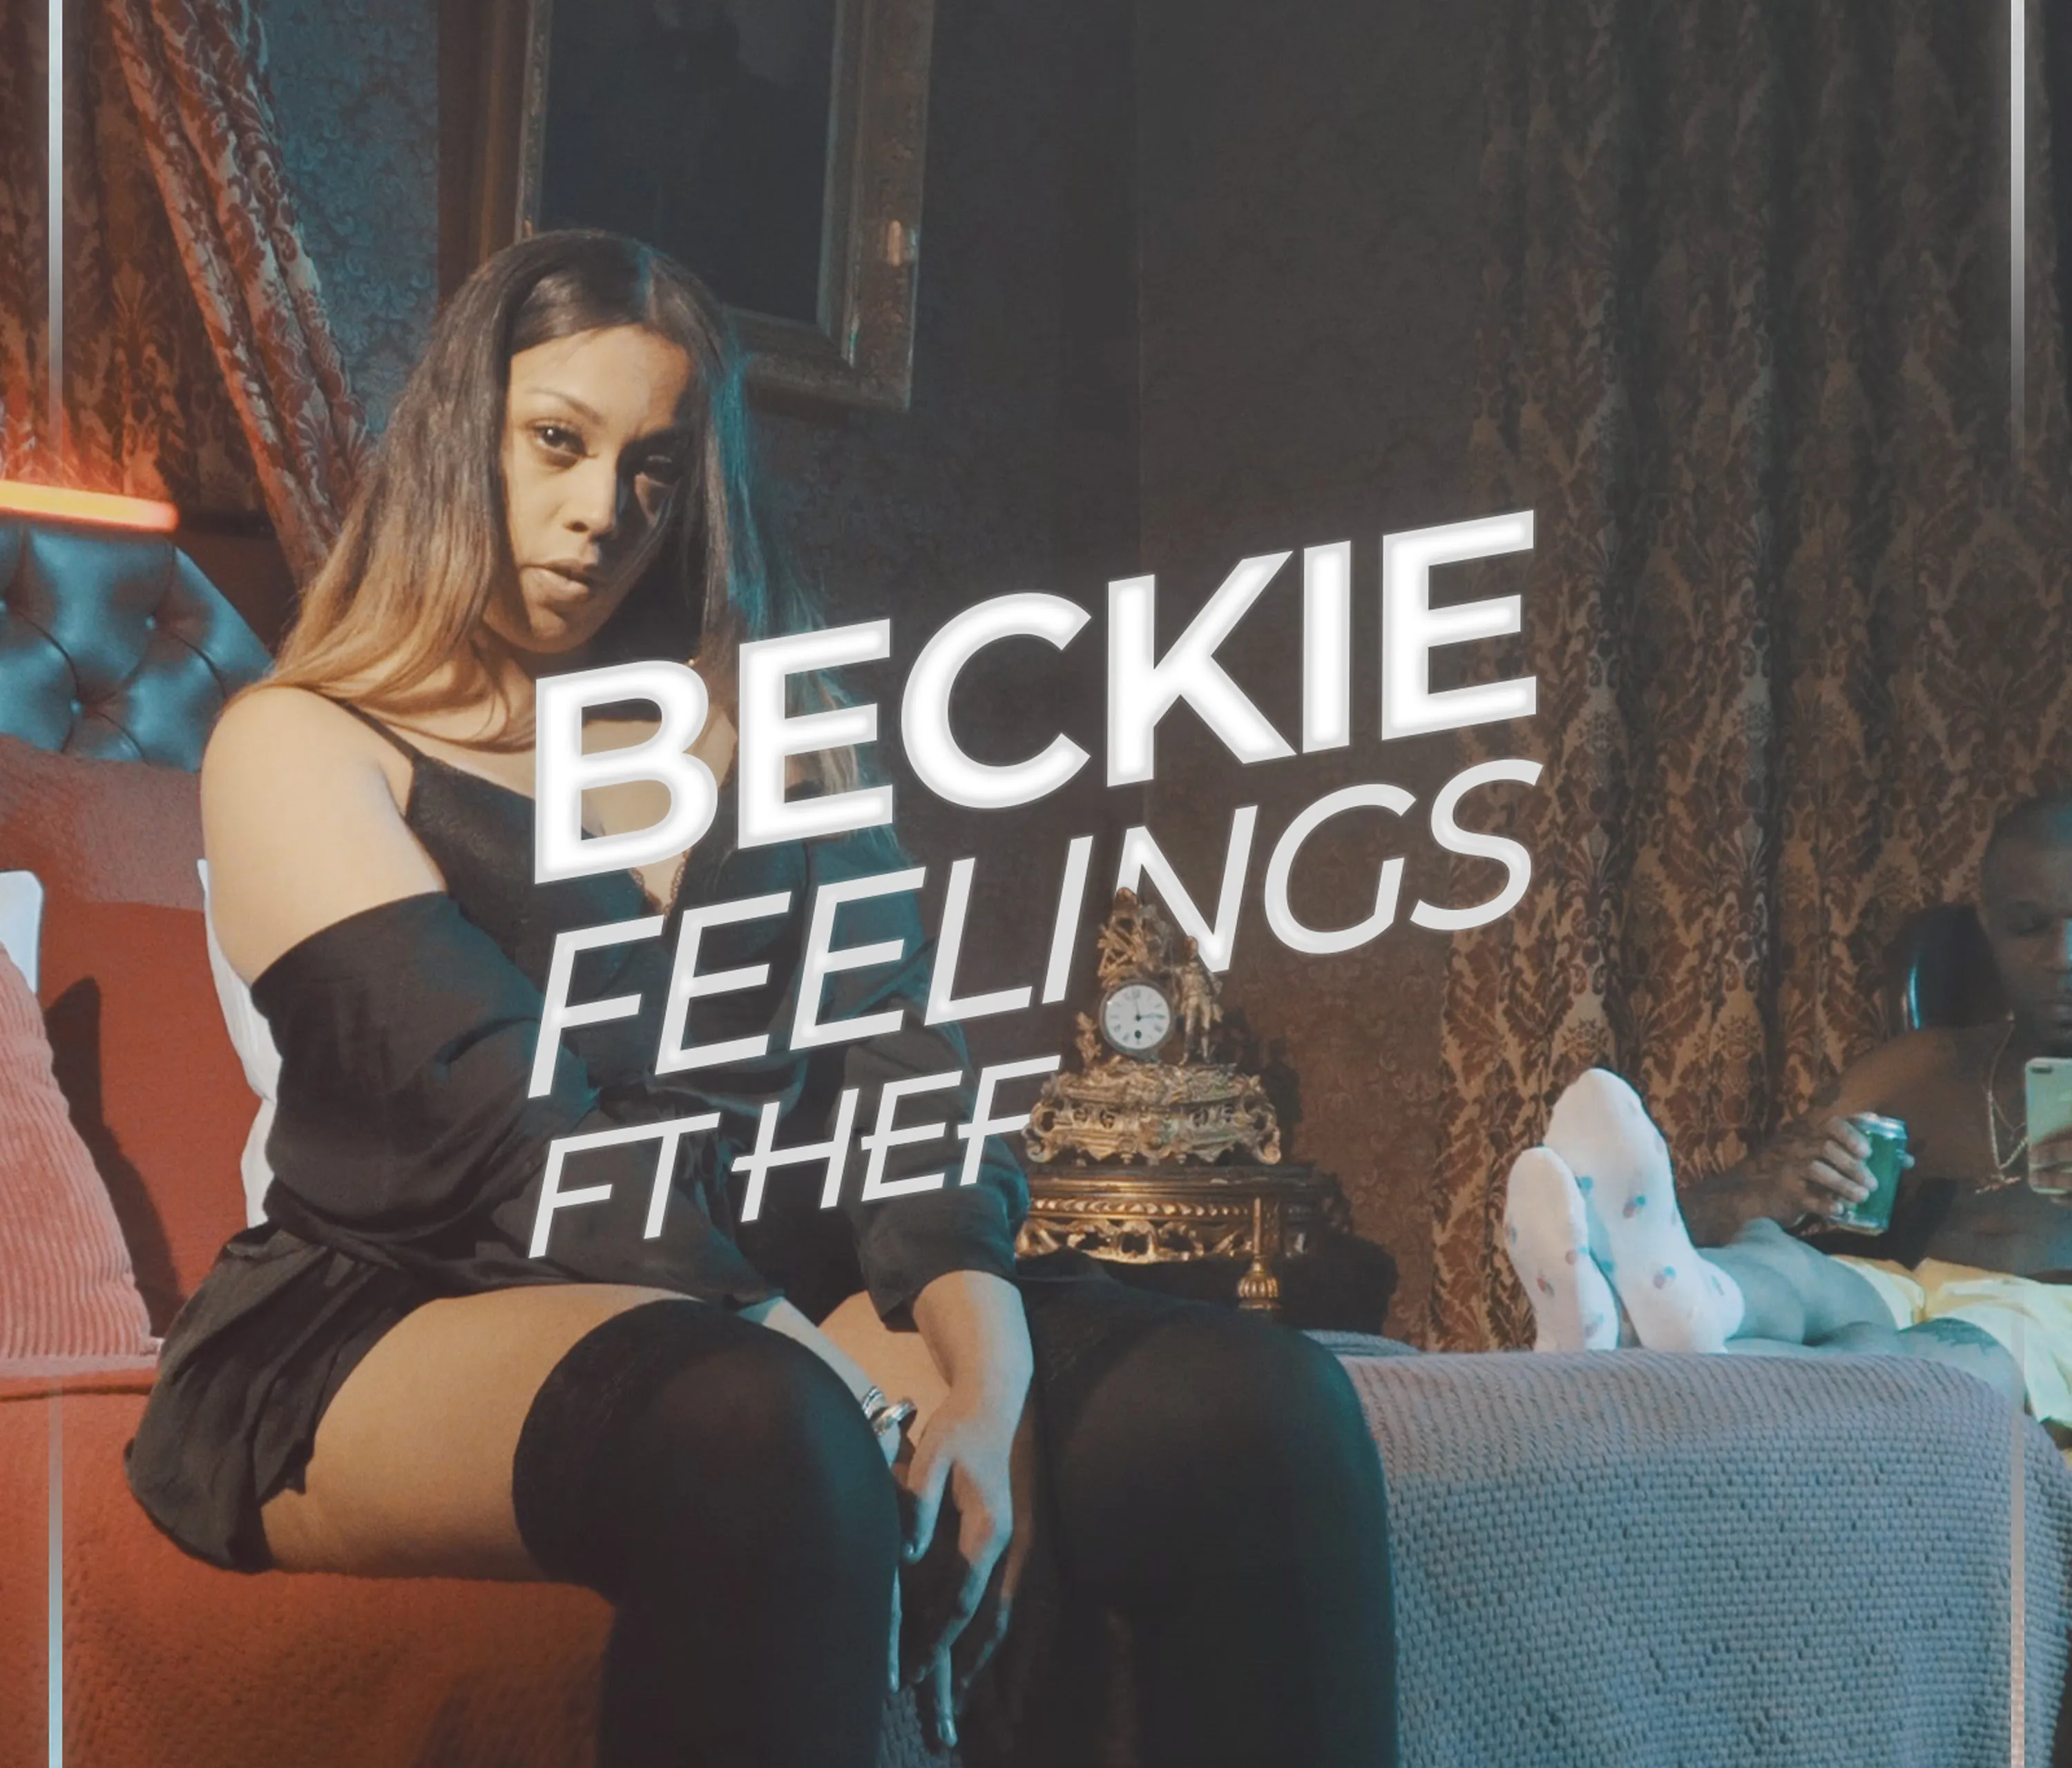 Beckie feelings quality